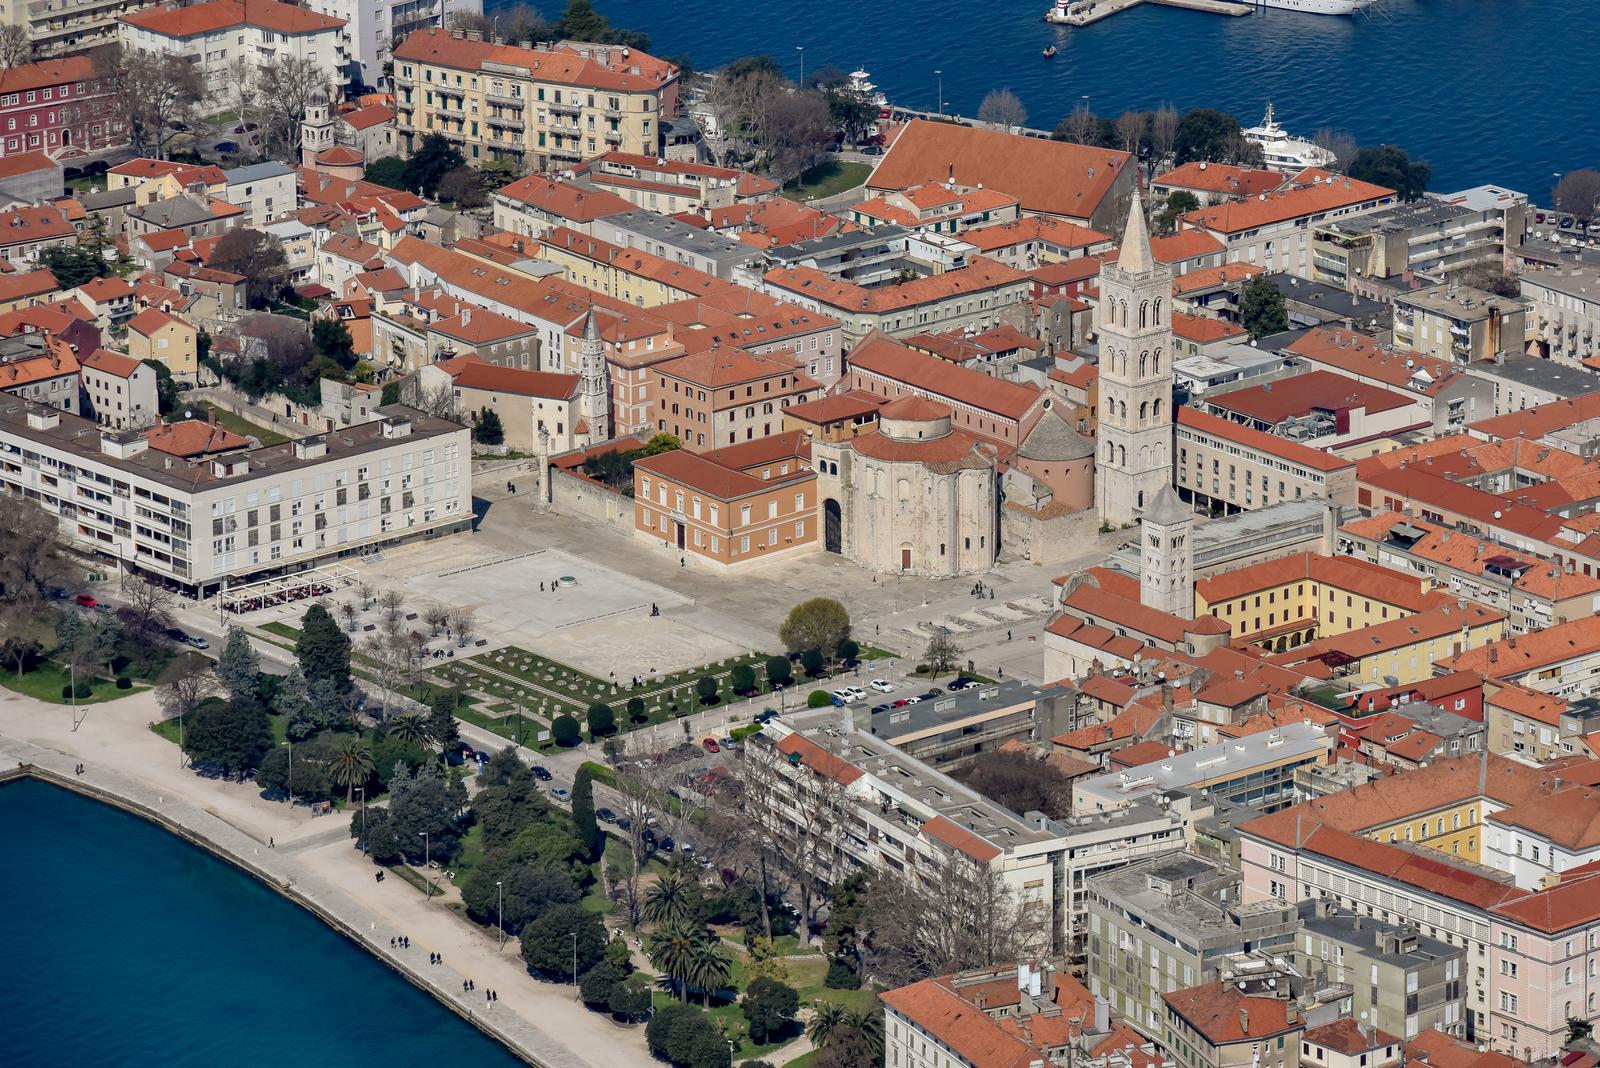 17.03.2016., Zadar - Zadar iz zraka. Ilustracije. Rimski Forum i crkva sv. Donata."nPhoto: Dino Stanin/PIXSELL